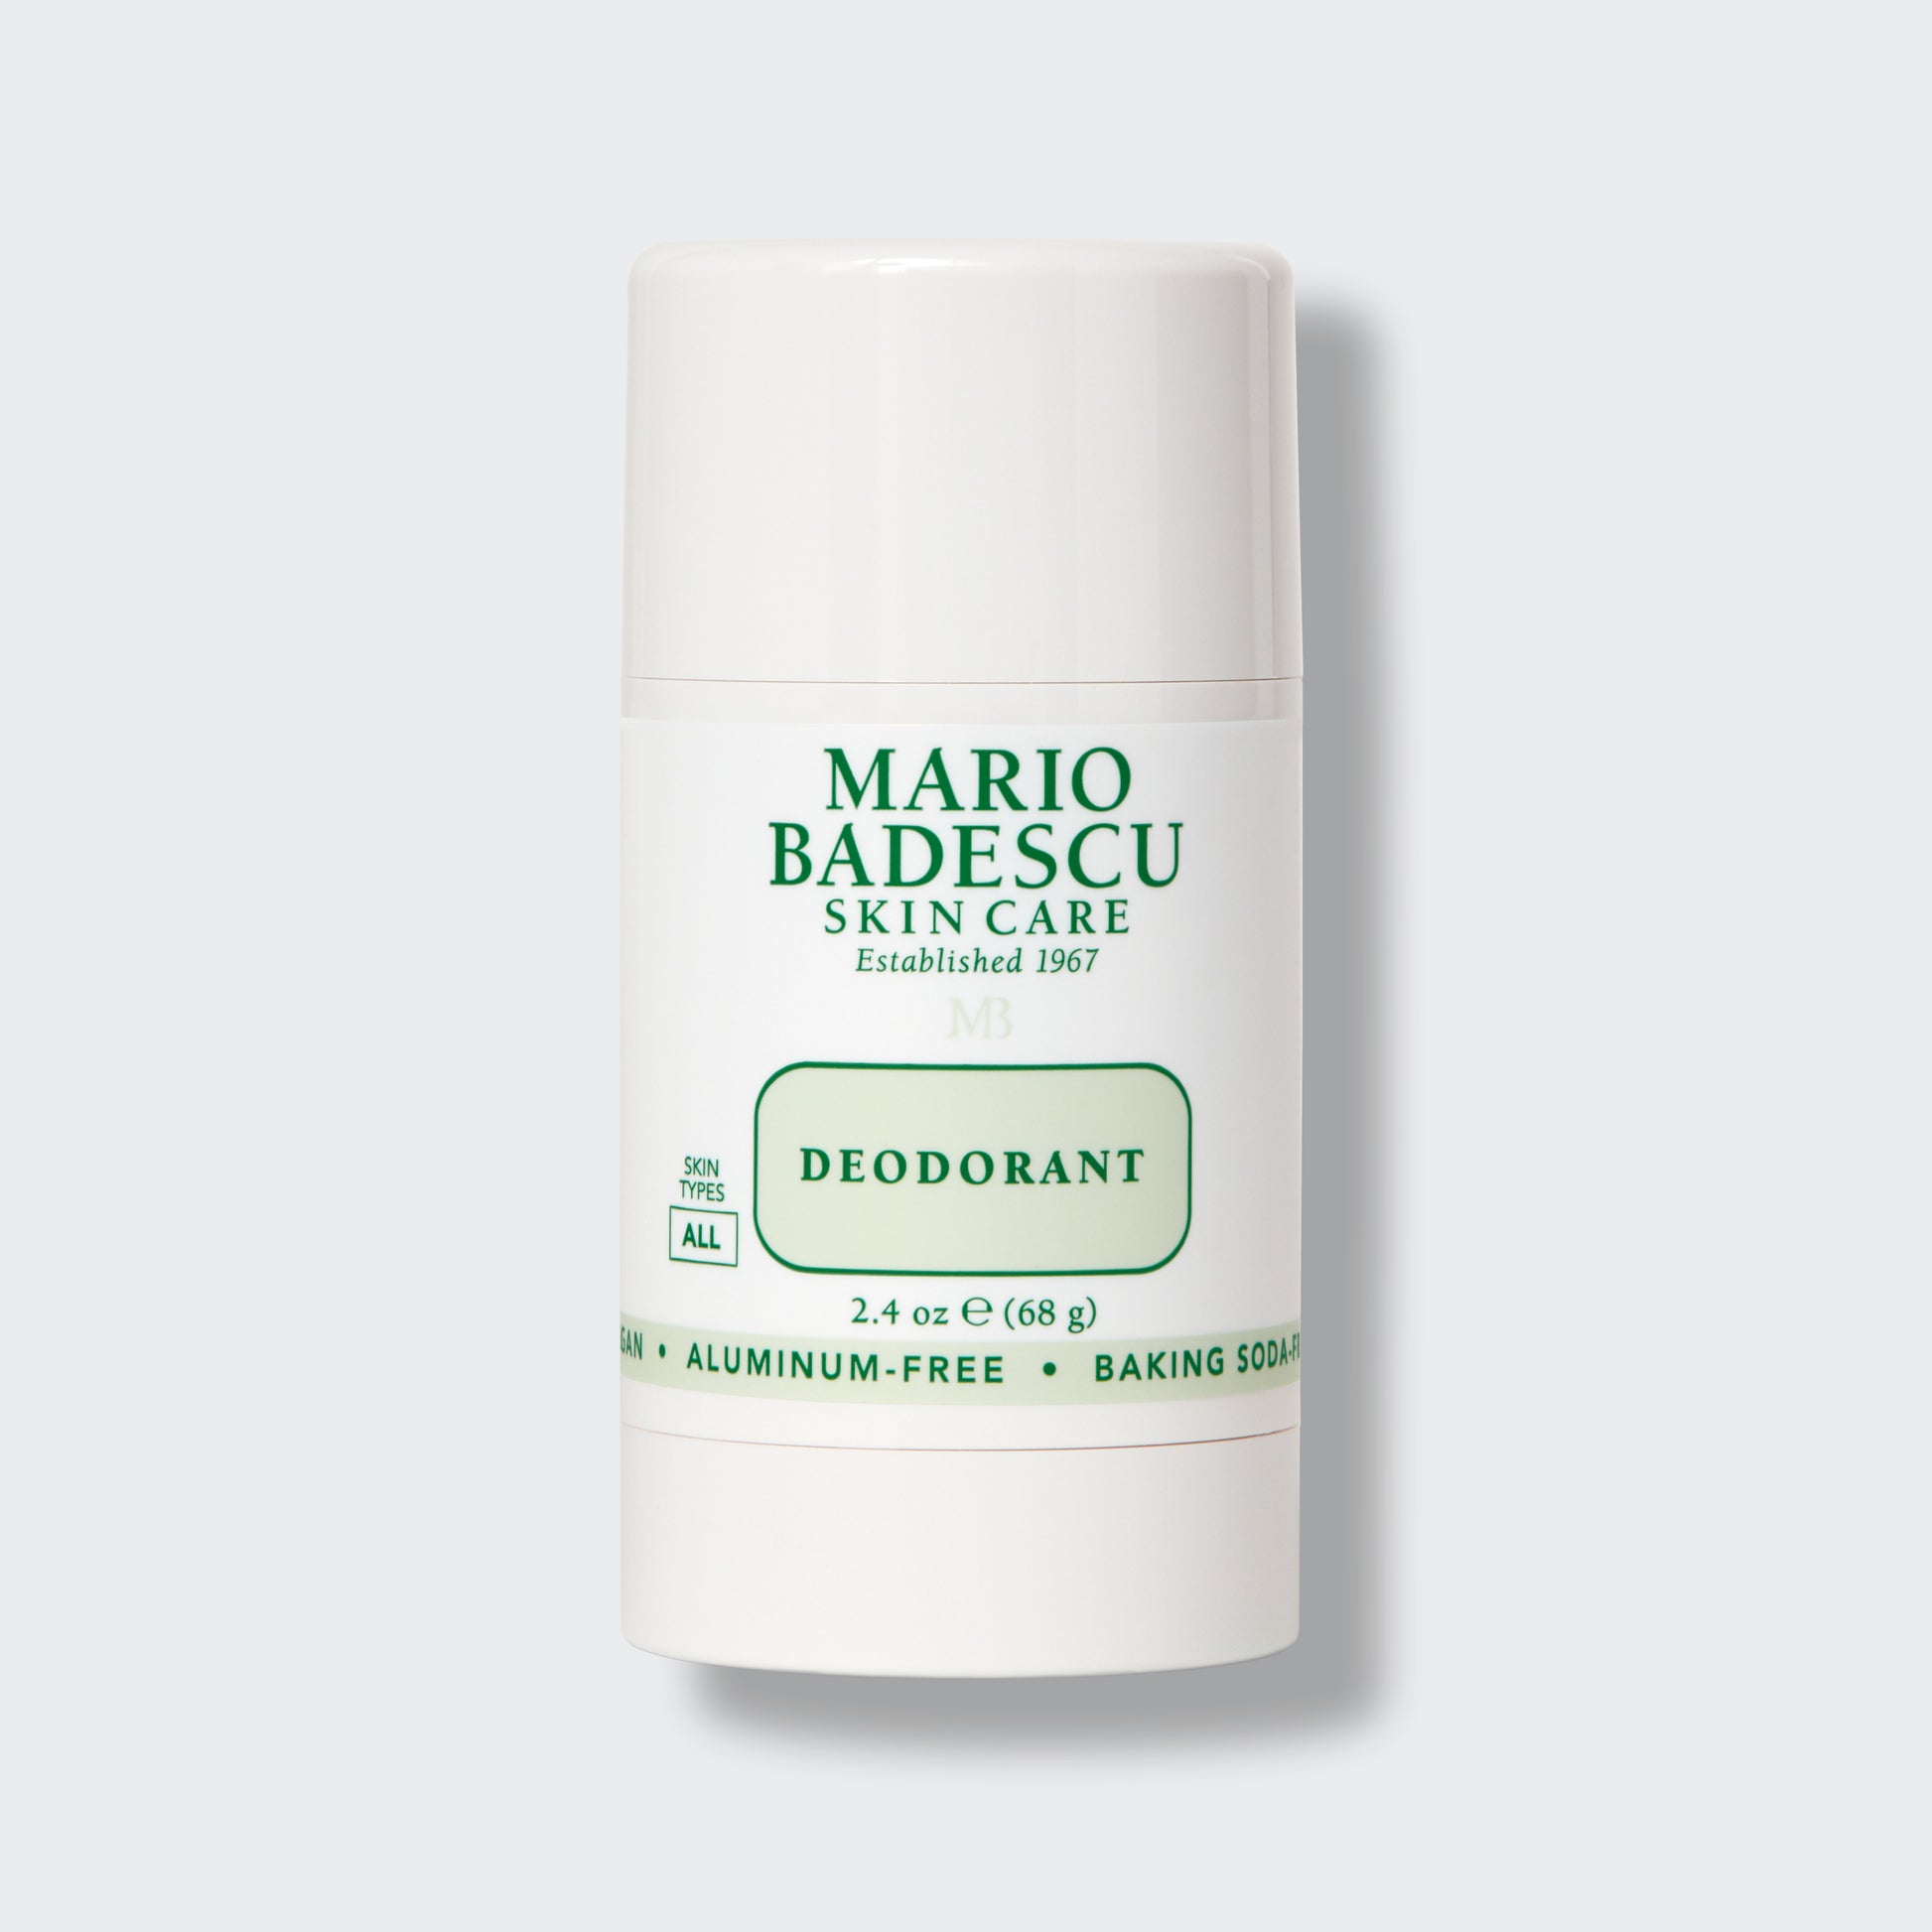 Mario Badescu Deodorant